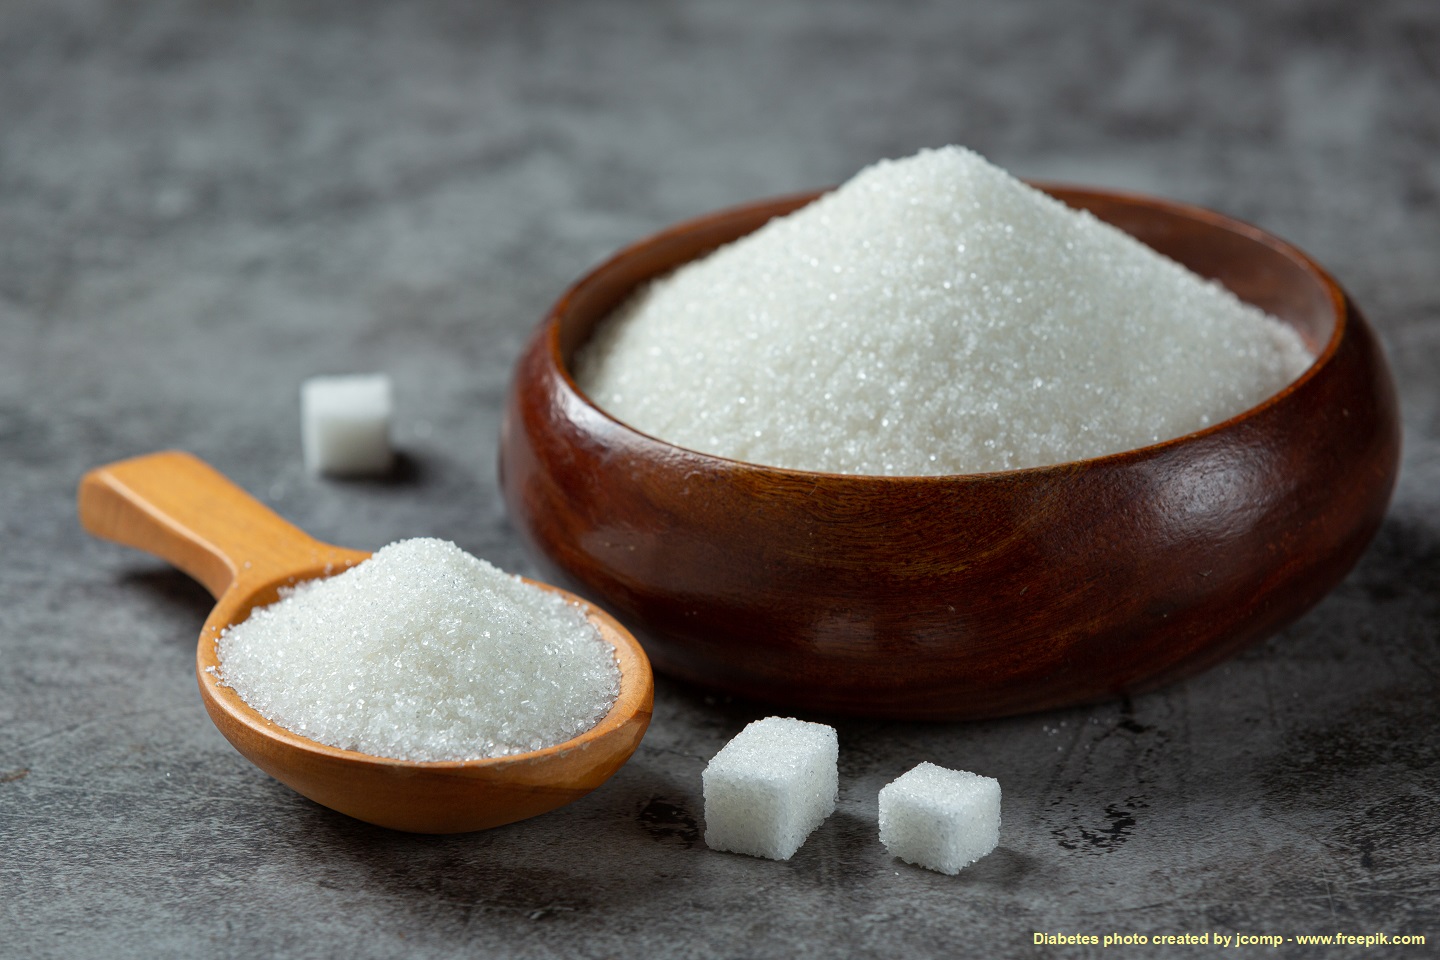 อินเดียจ่อห้ามส่งออกน้ำตาลทราย พาณิชย์หวั่นราคาตลาดโลกพุ่ง ...